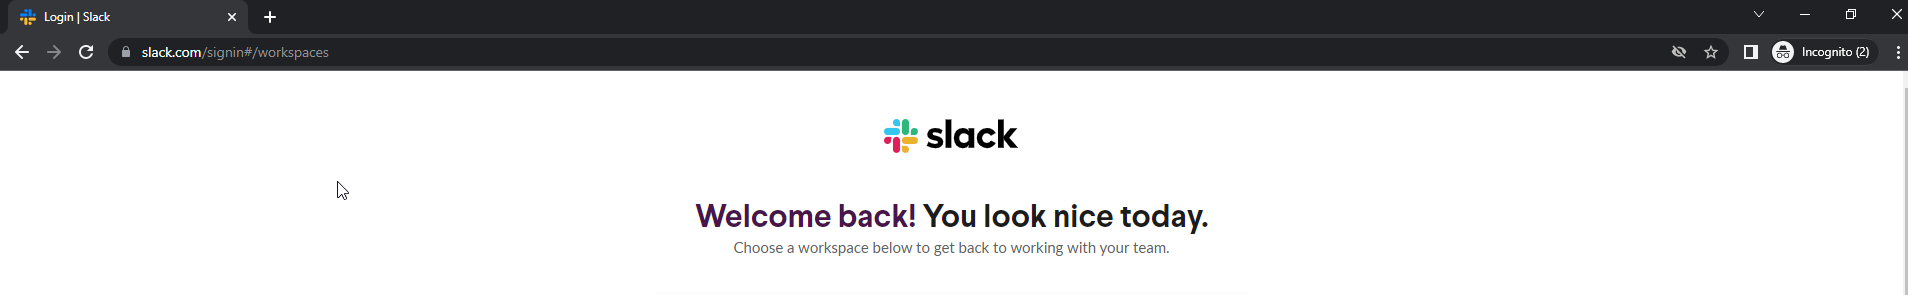 Giao diện Slack sau khi đăng nhập